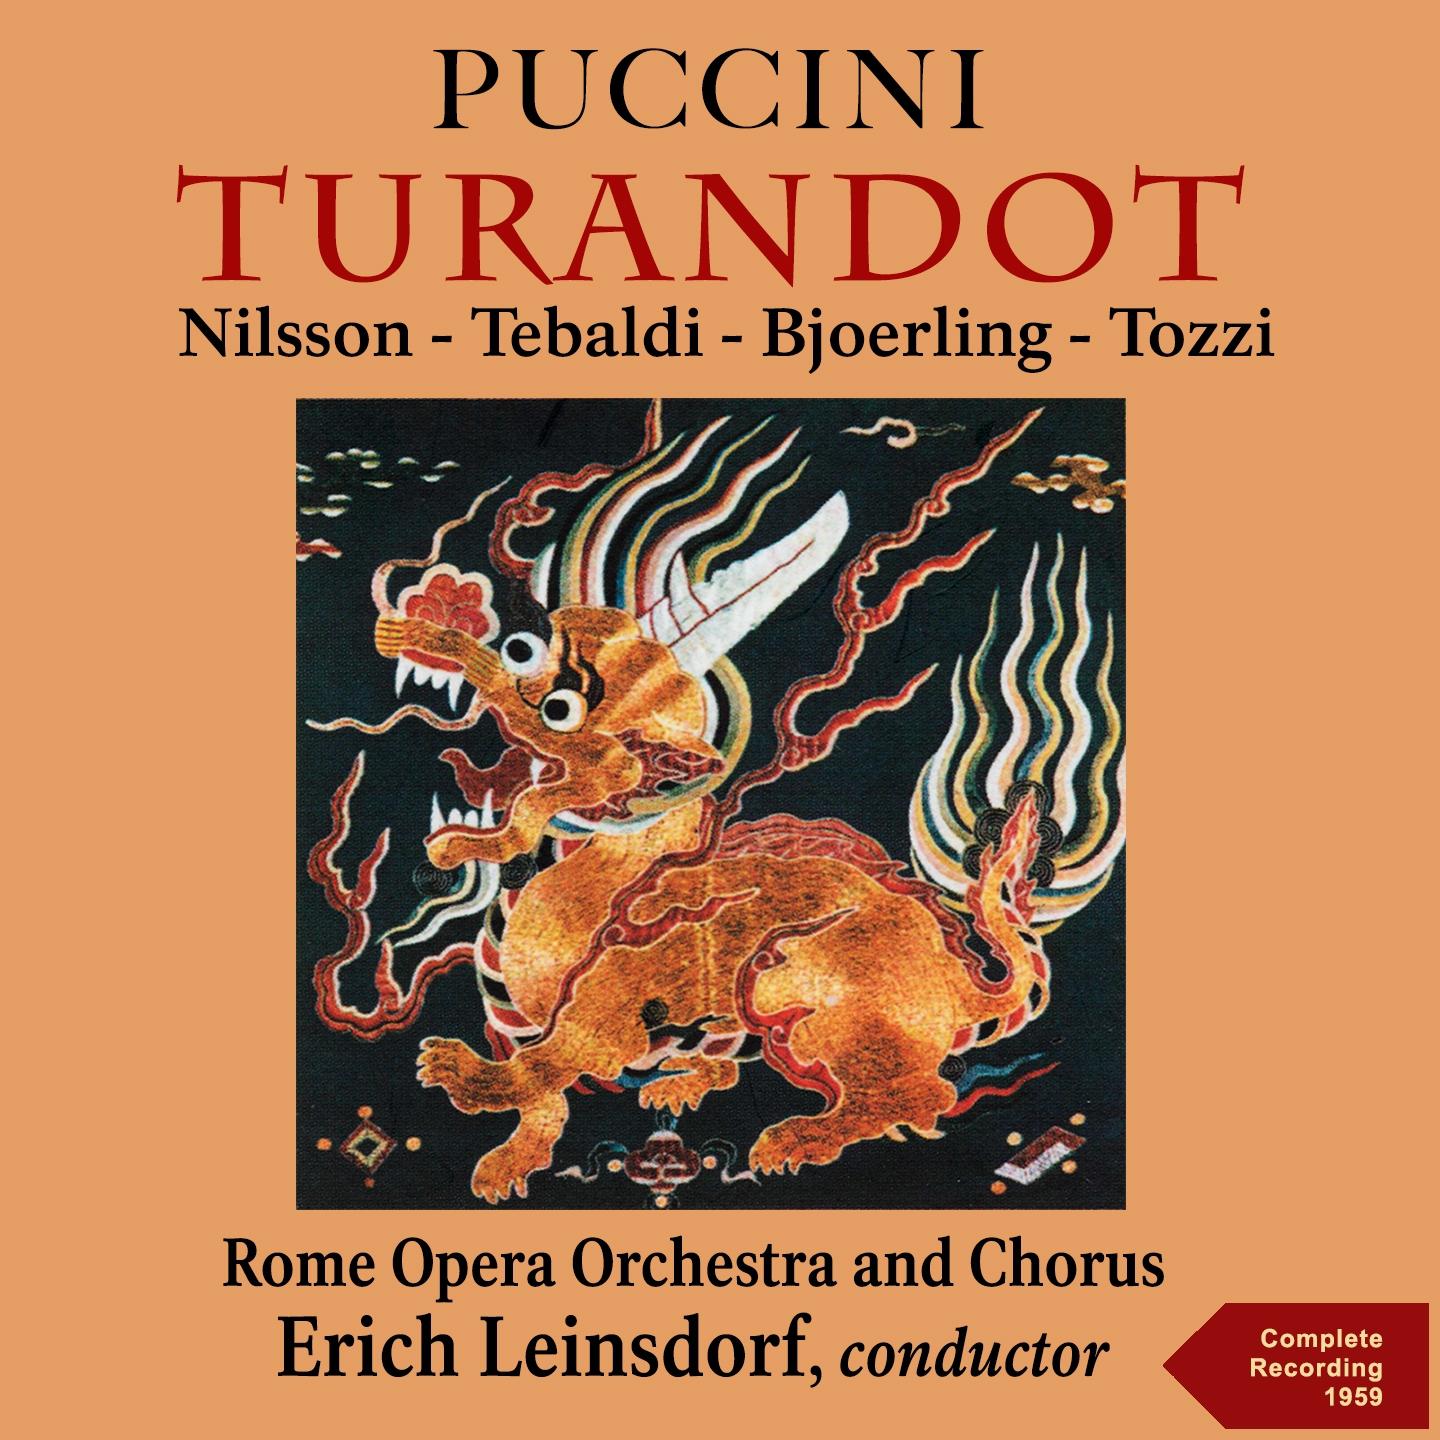 Turandot, Act II, Scene 2: " Giuzza al pari di fiamma" Turandot, Altoum, Coro, Liu, Calaf